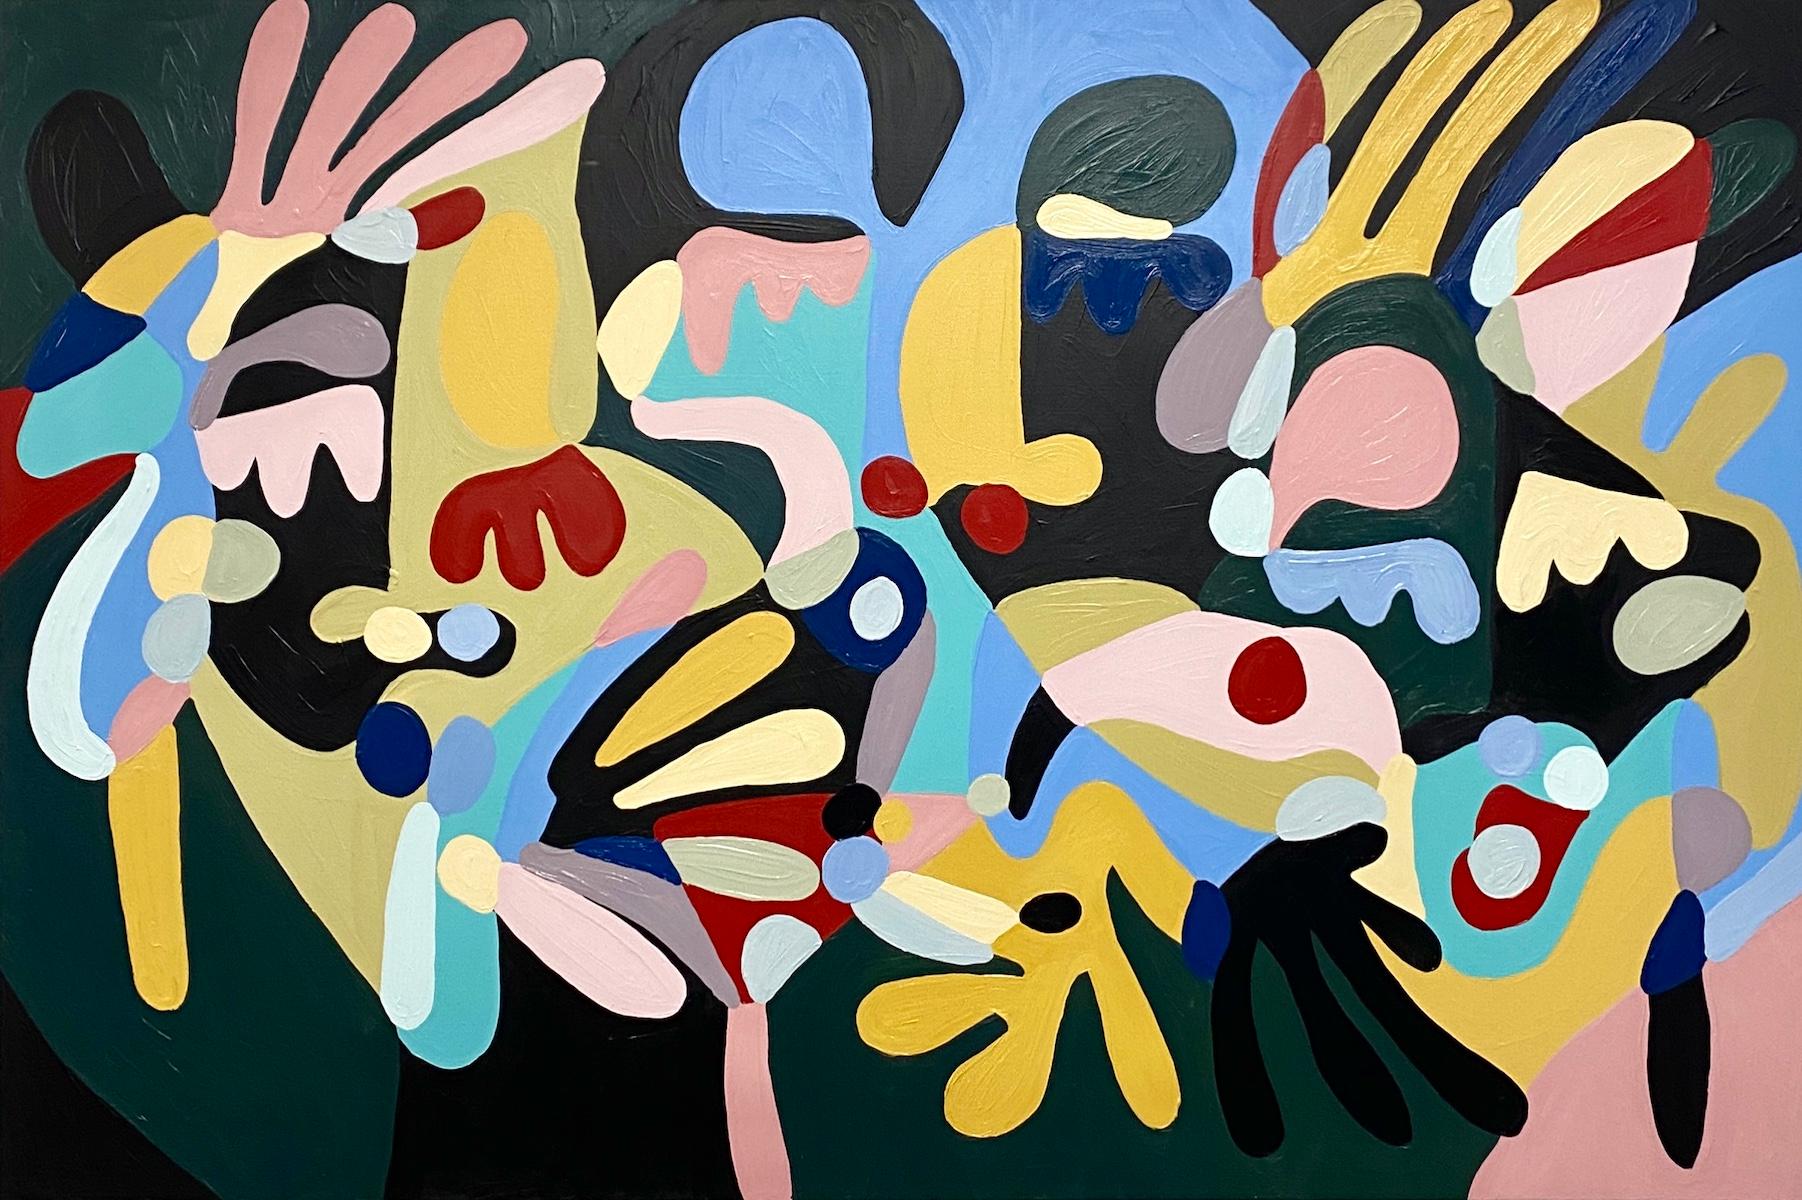 Farben eines Traums, kühnes abstraktes Gemälde im Picasso-Stil, Gemälde im Matisse-Stil